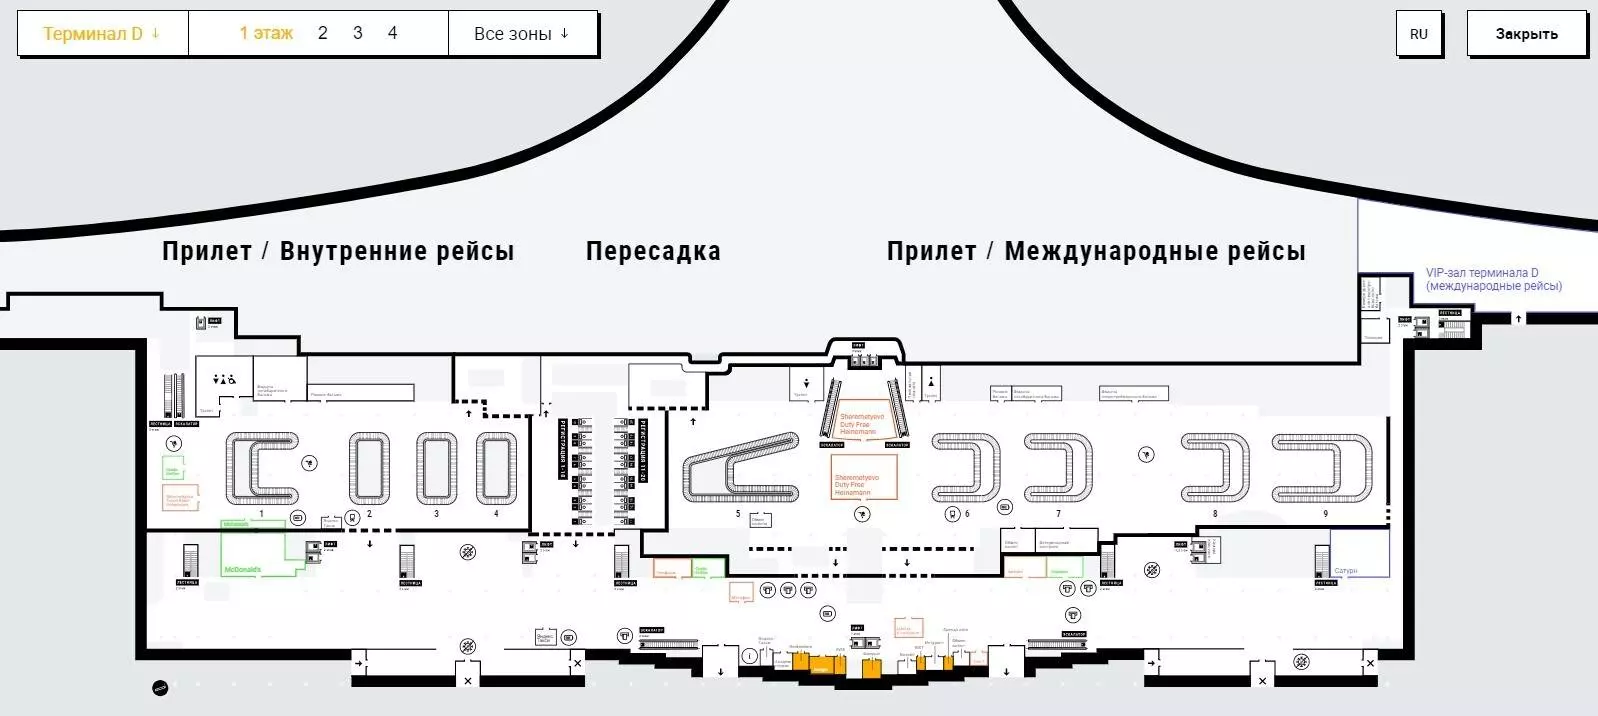 Svo какой аэропорт в москве: расшифровка